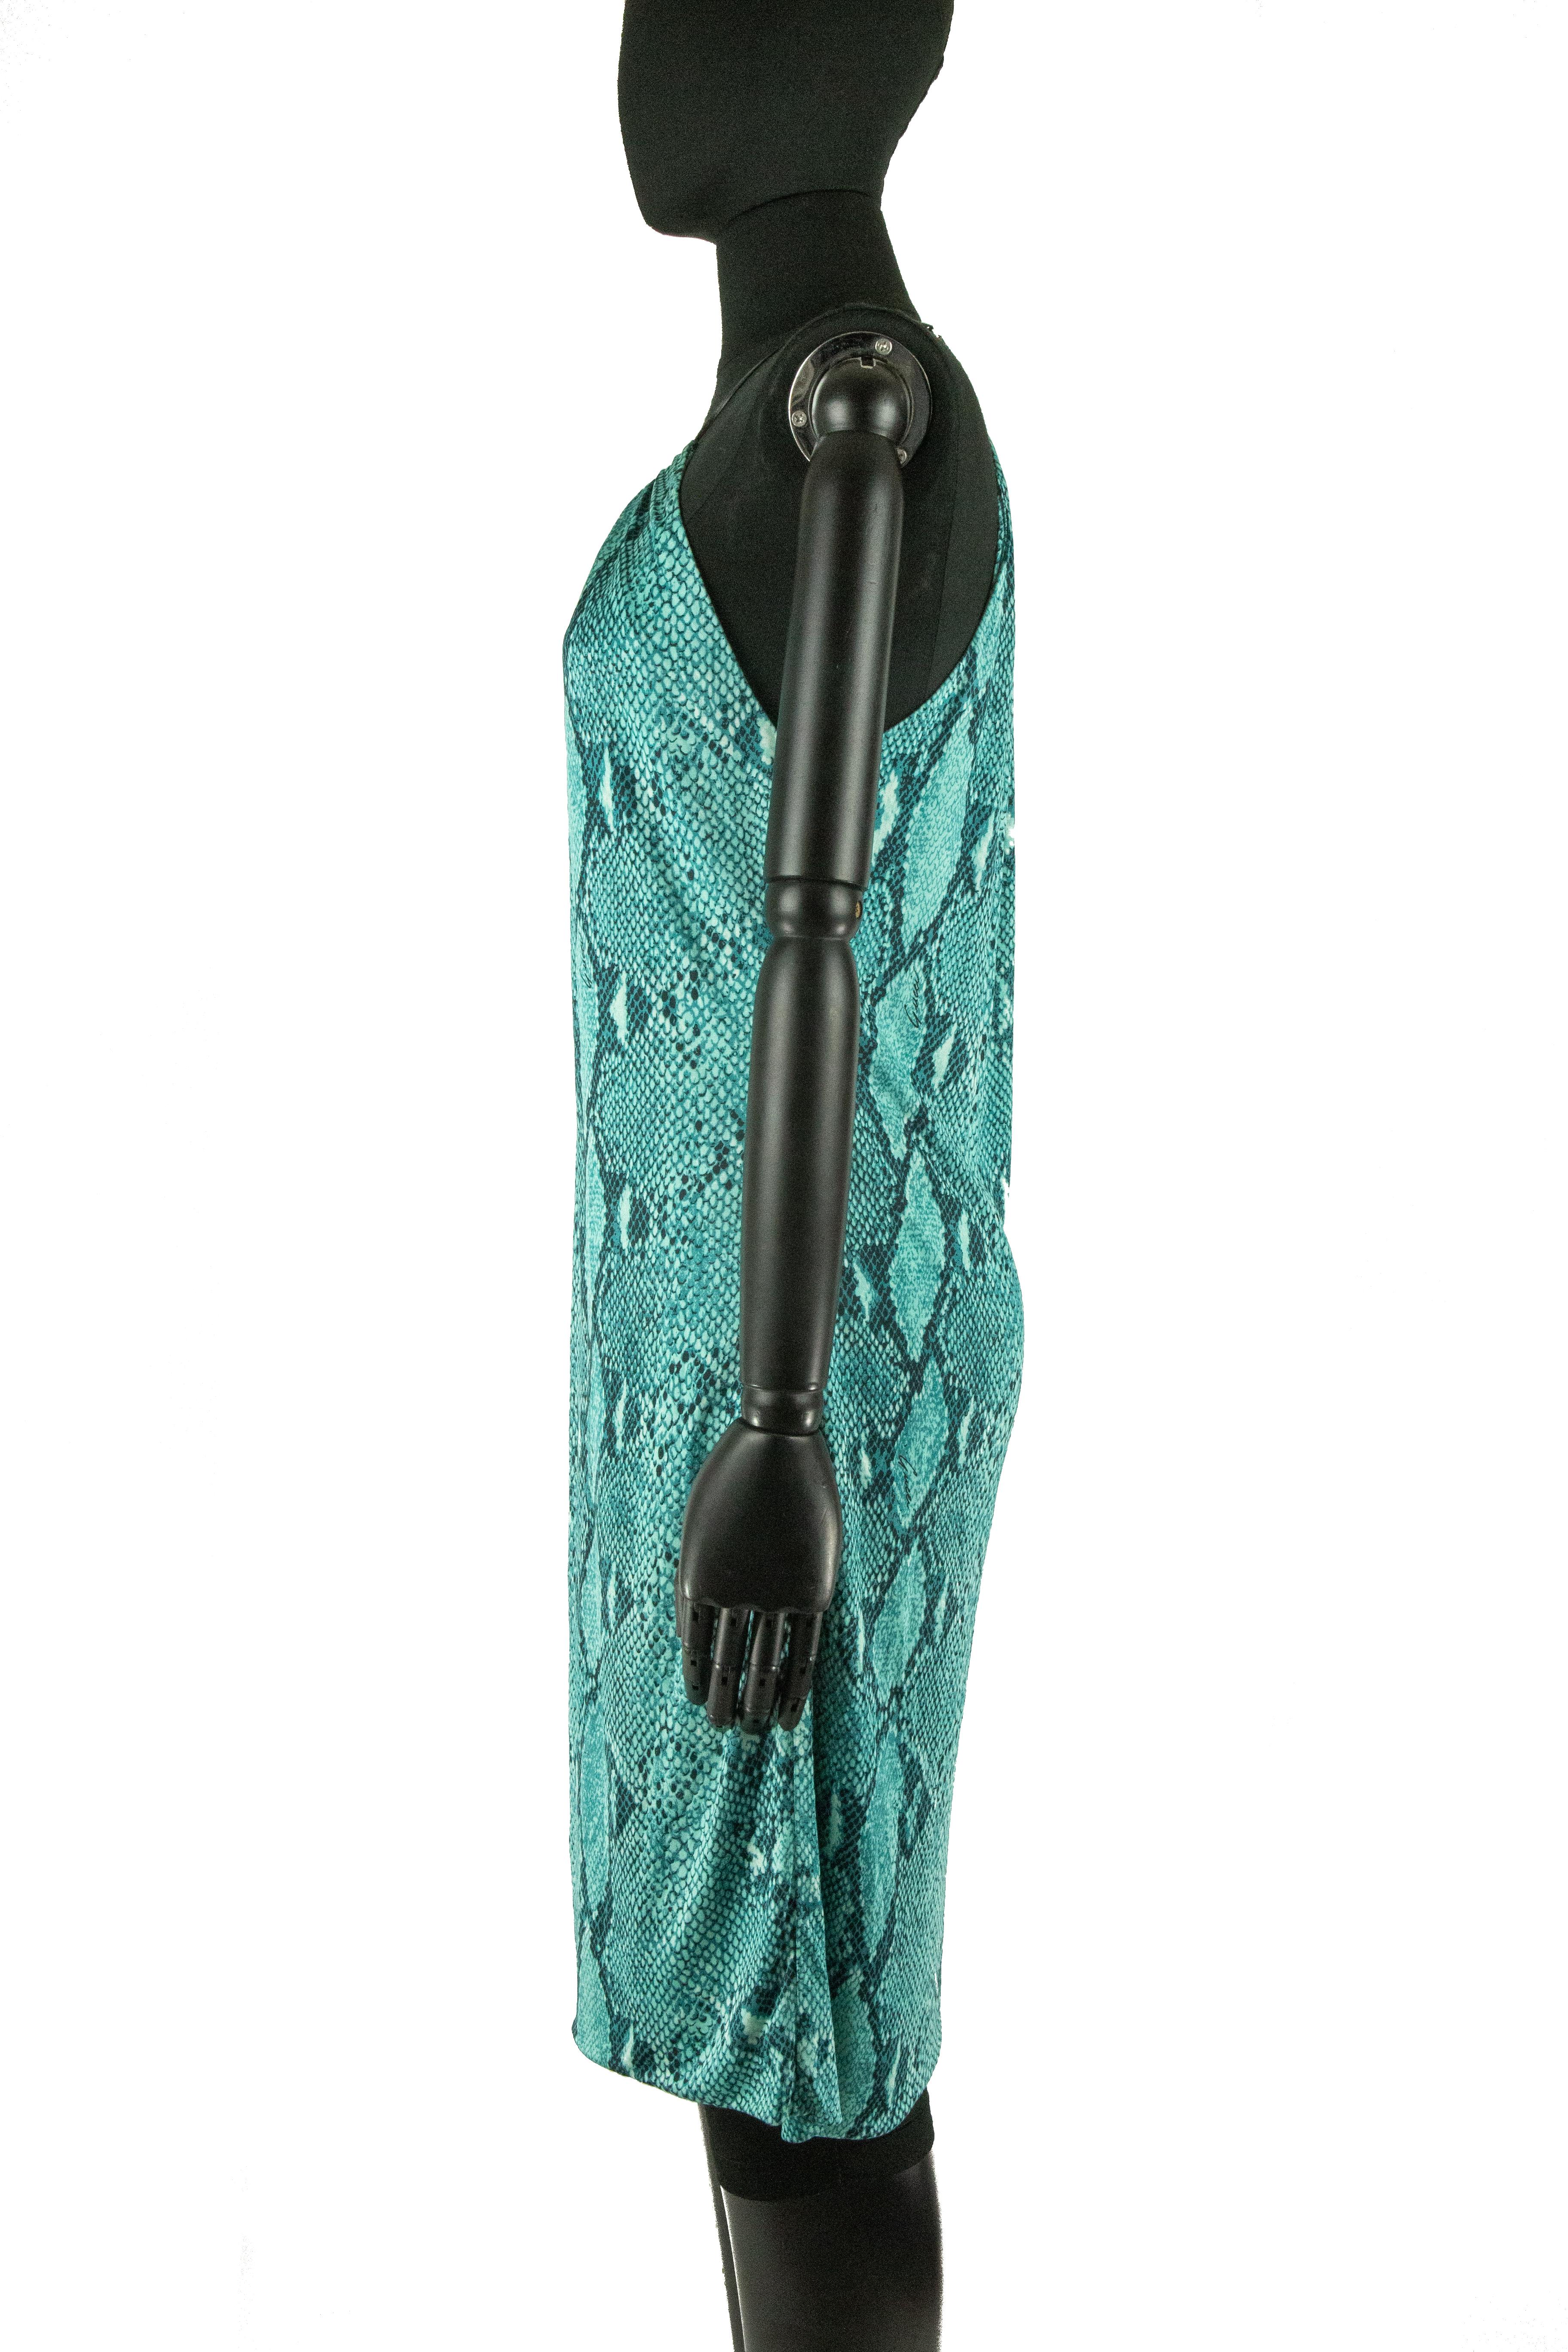 Robe en jersey Gucci by Tom Ford, printemps 2000, imprimée sur tout le corps en peau de serpent avec l'inscription House, dans les tons vert vert-de-gris, turquoise et noir, le tout suspendu à une fine lanière de cuir noir formant une encolure